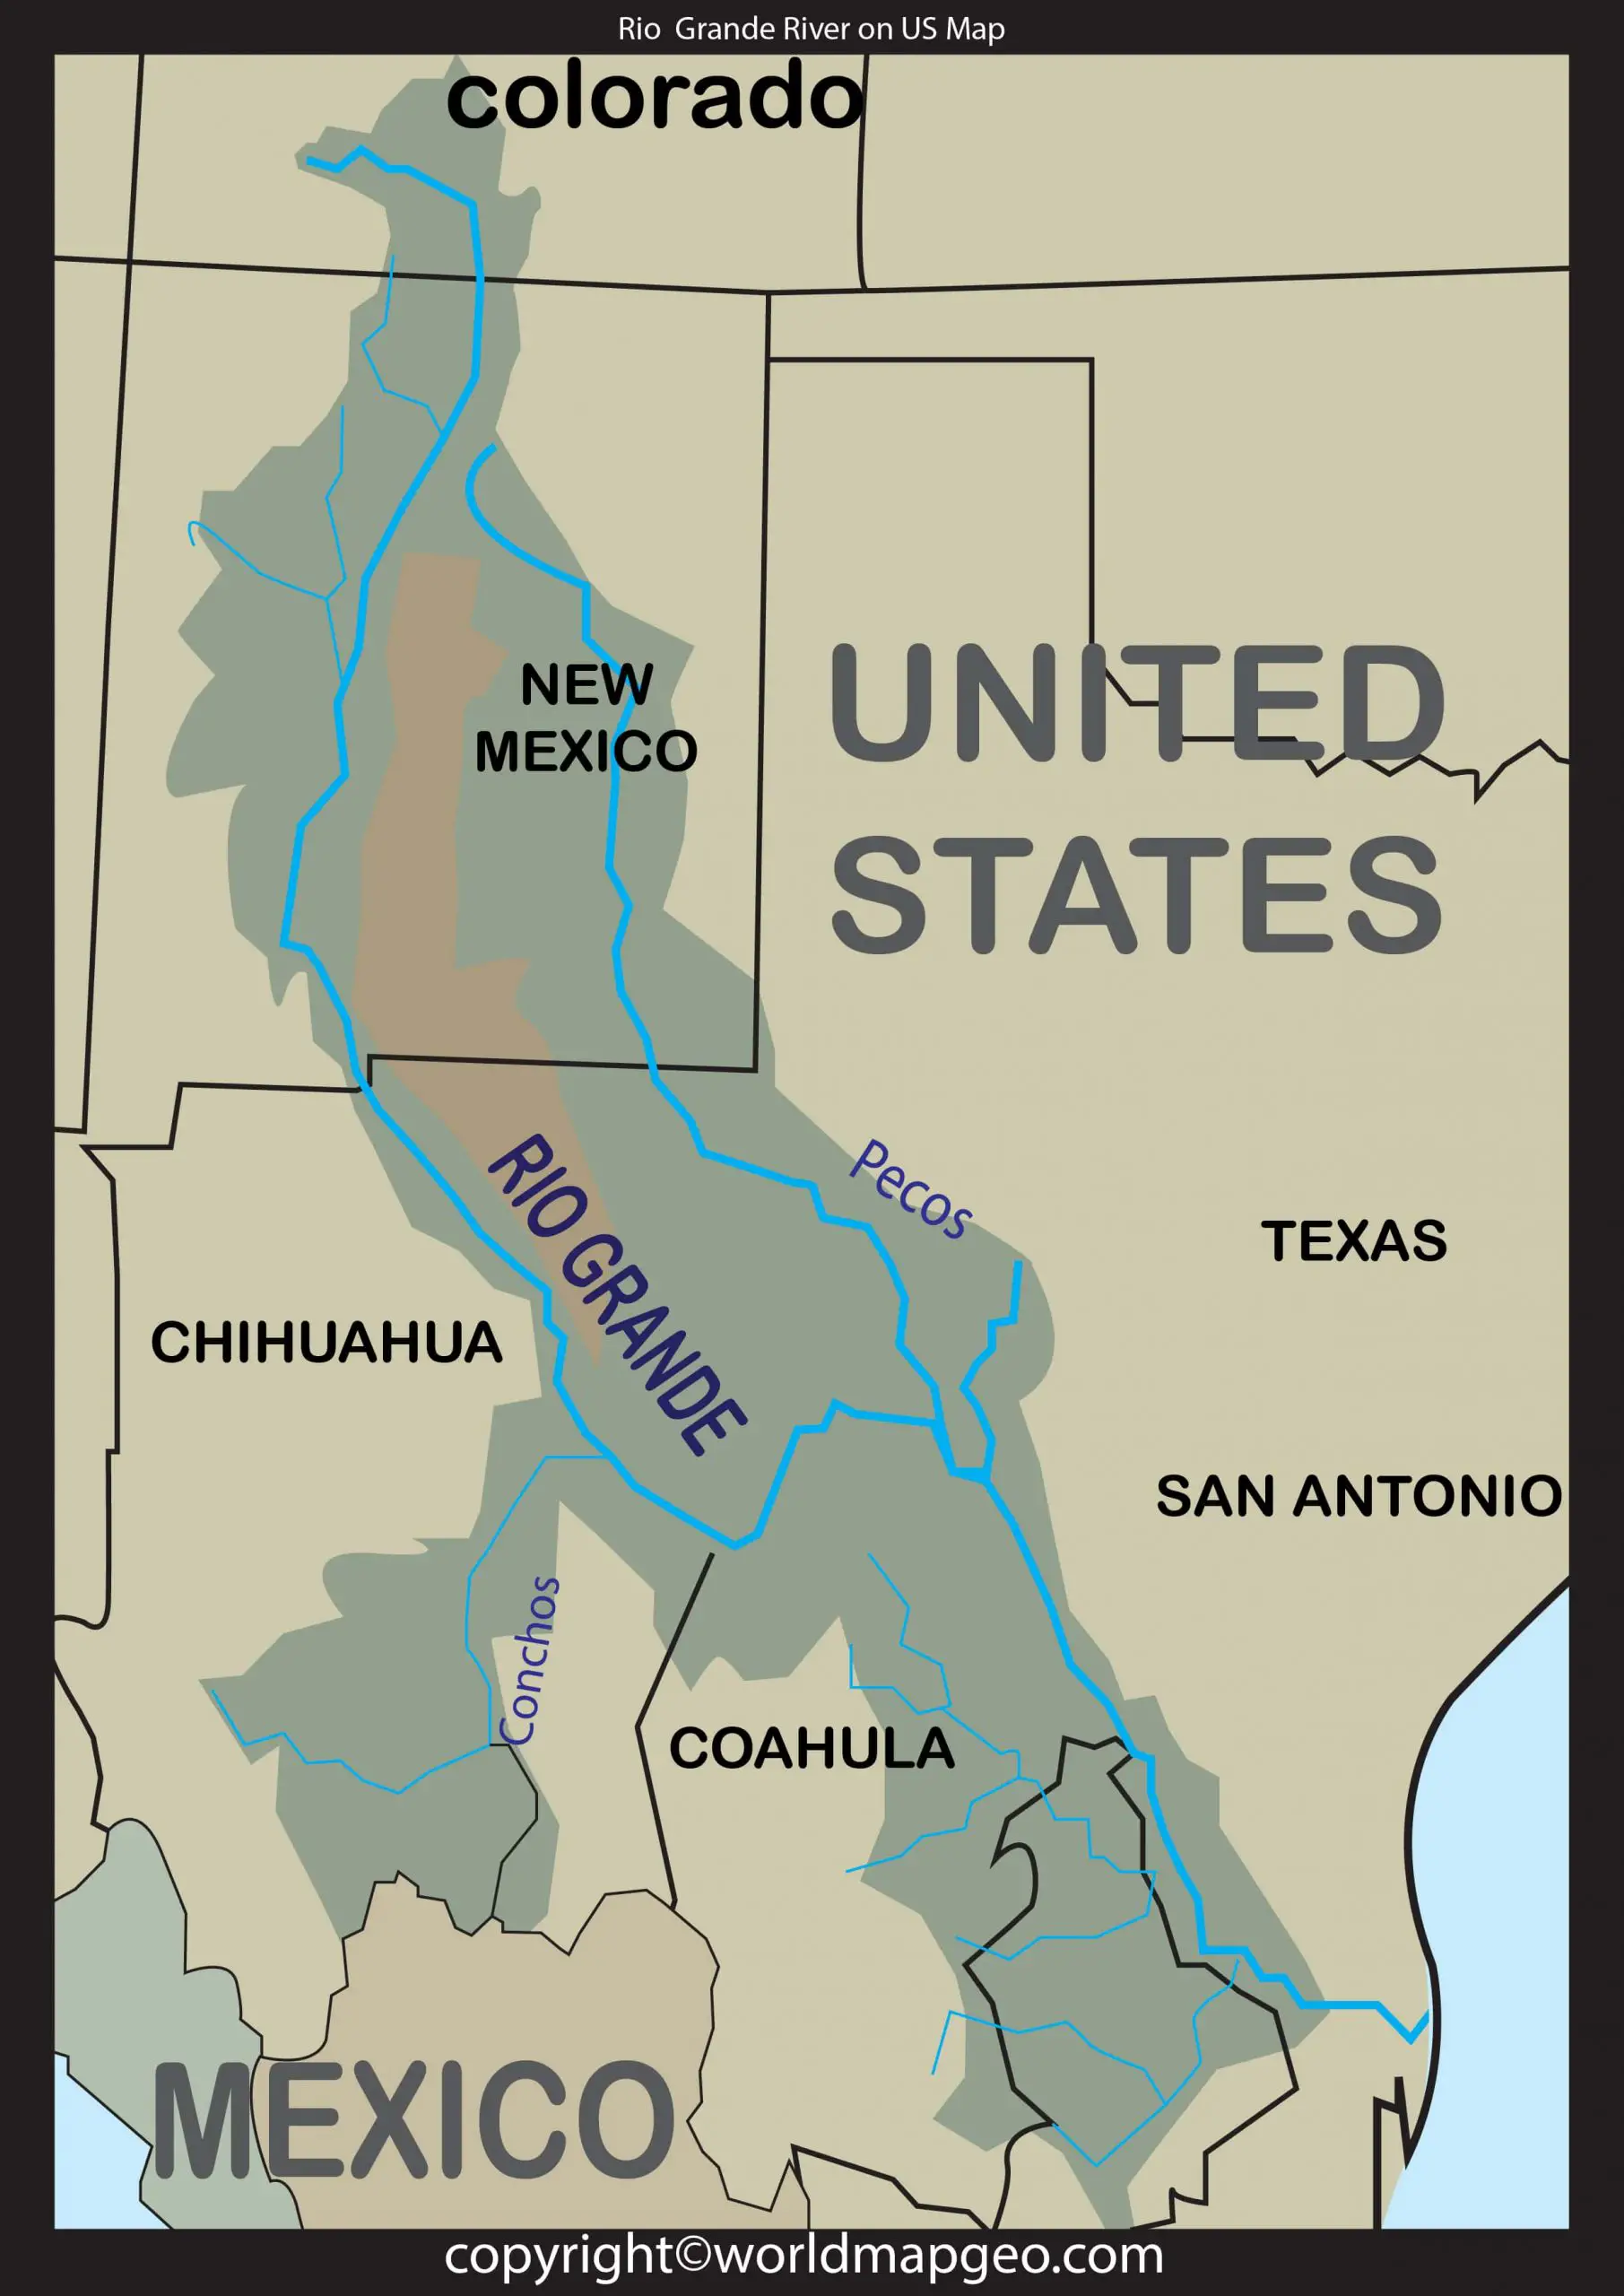 Rio Grande River on US map